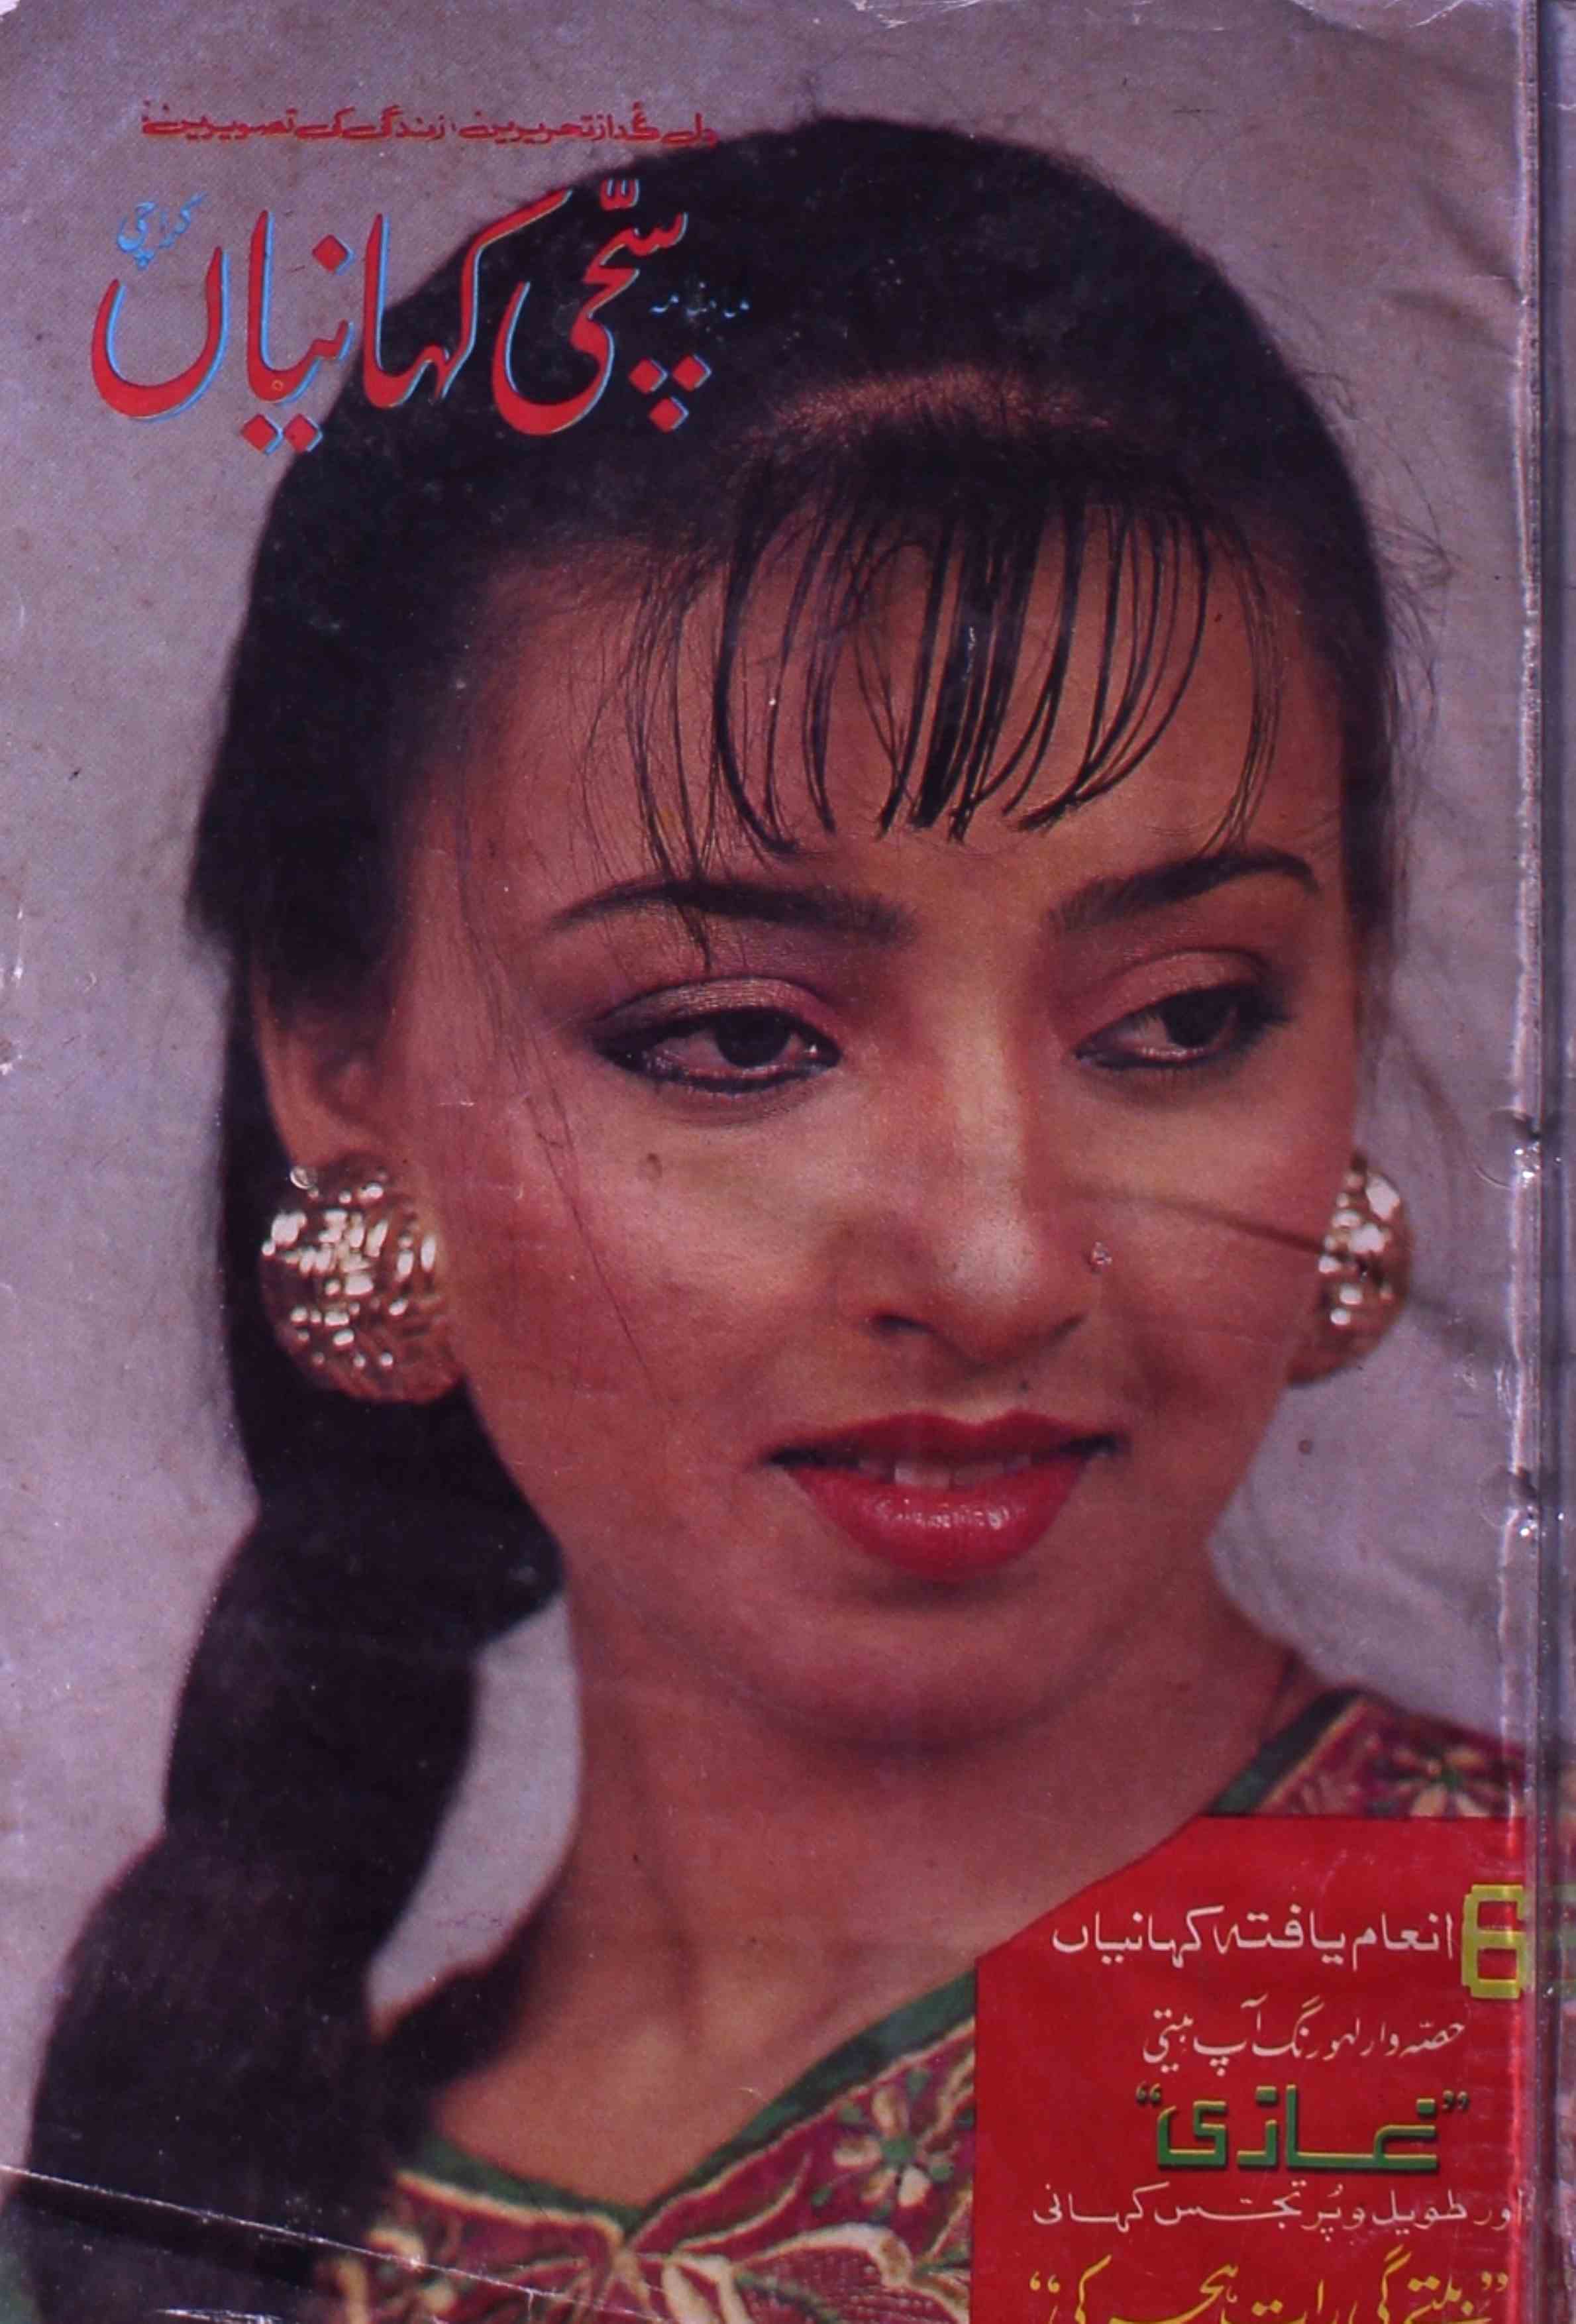 Sacchi Kahaniya Jild 8 Shumara 7-8 July-Aug 1992